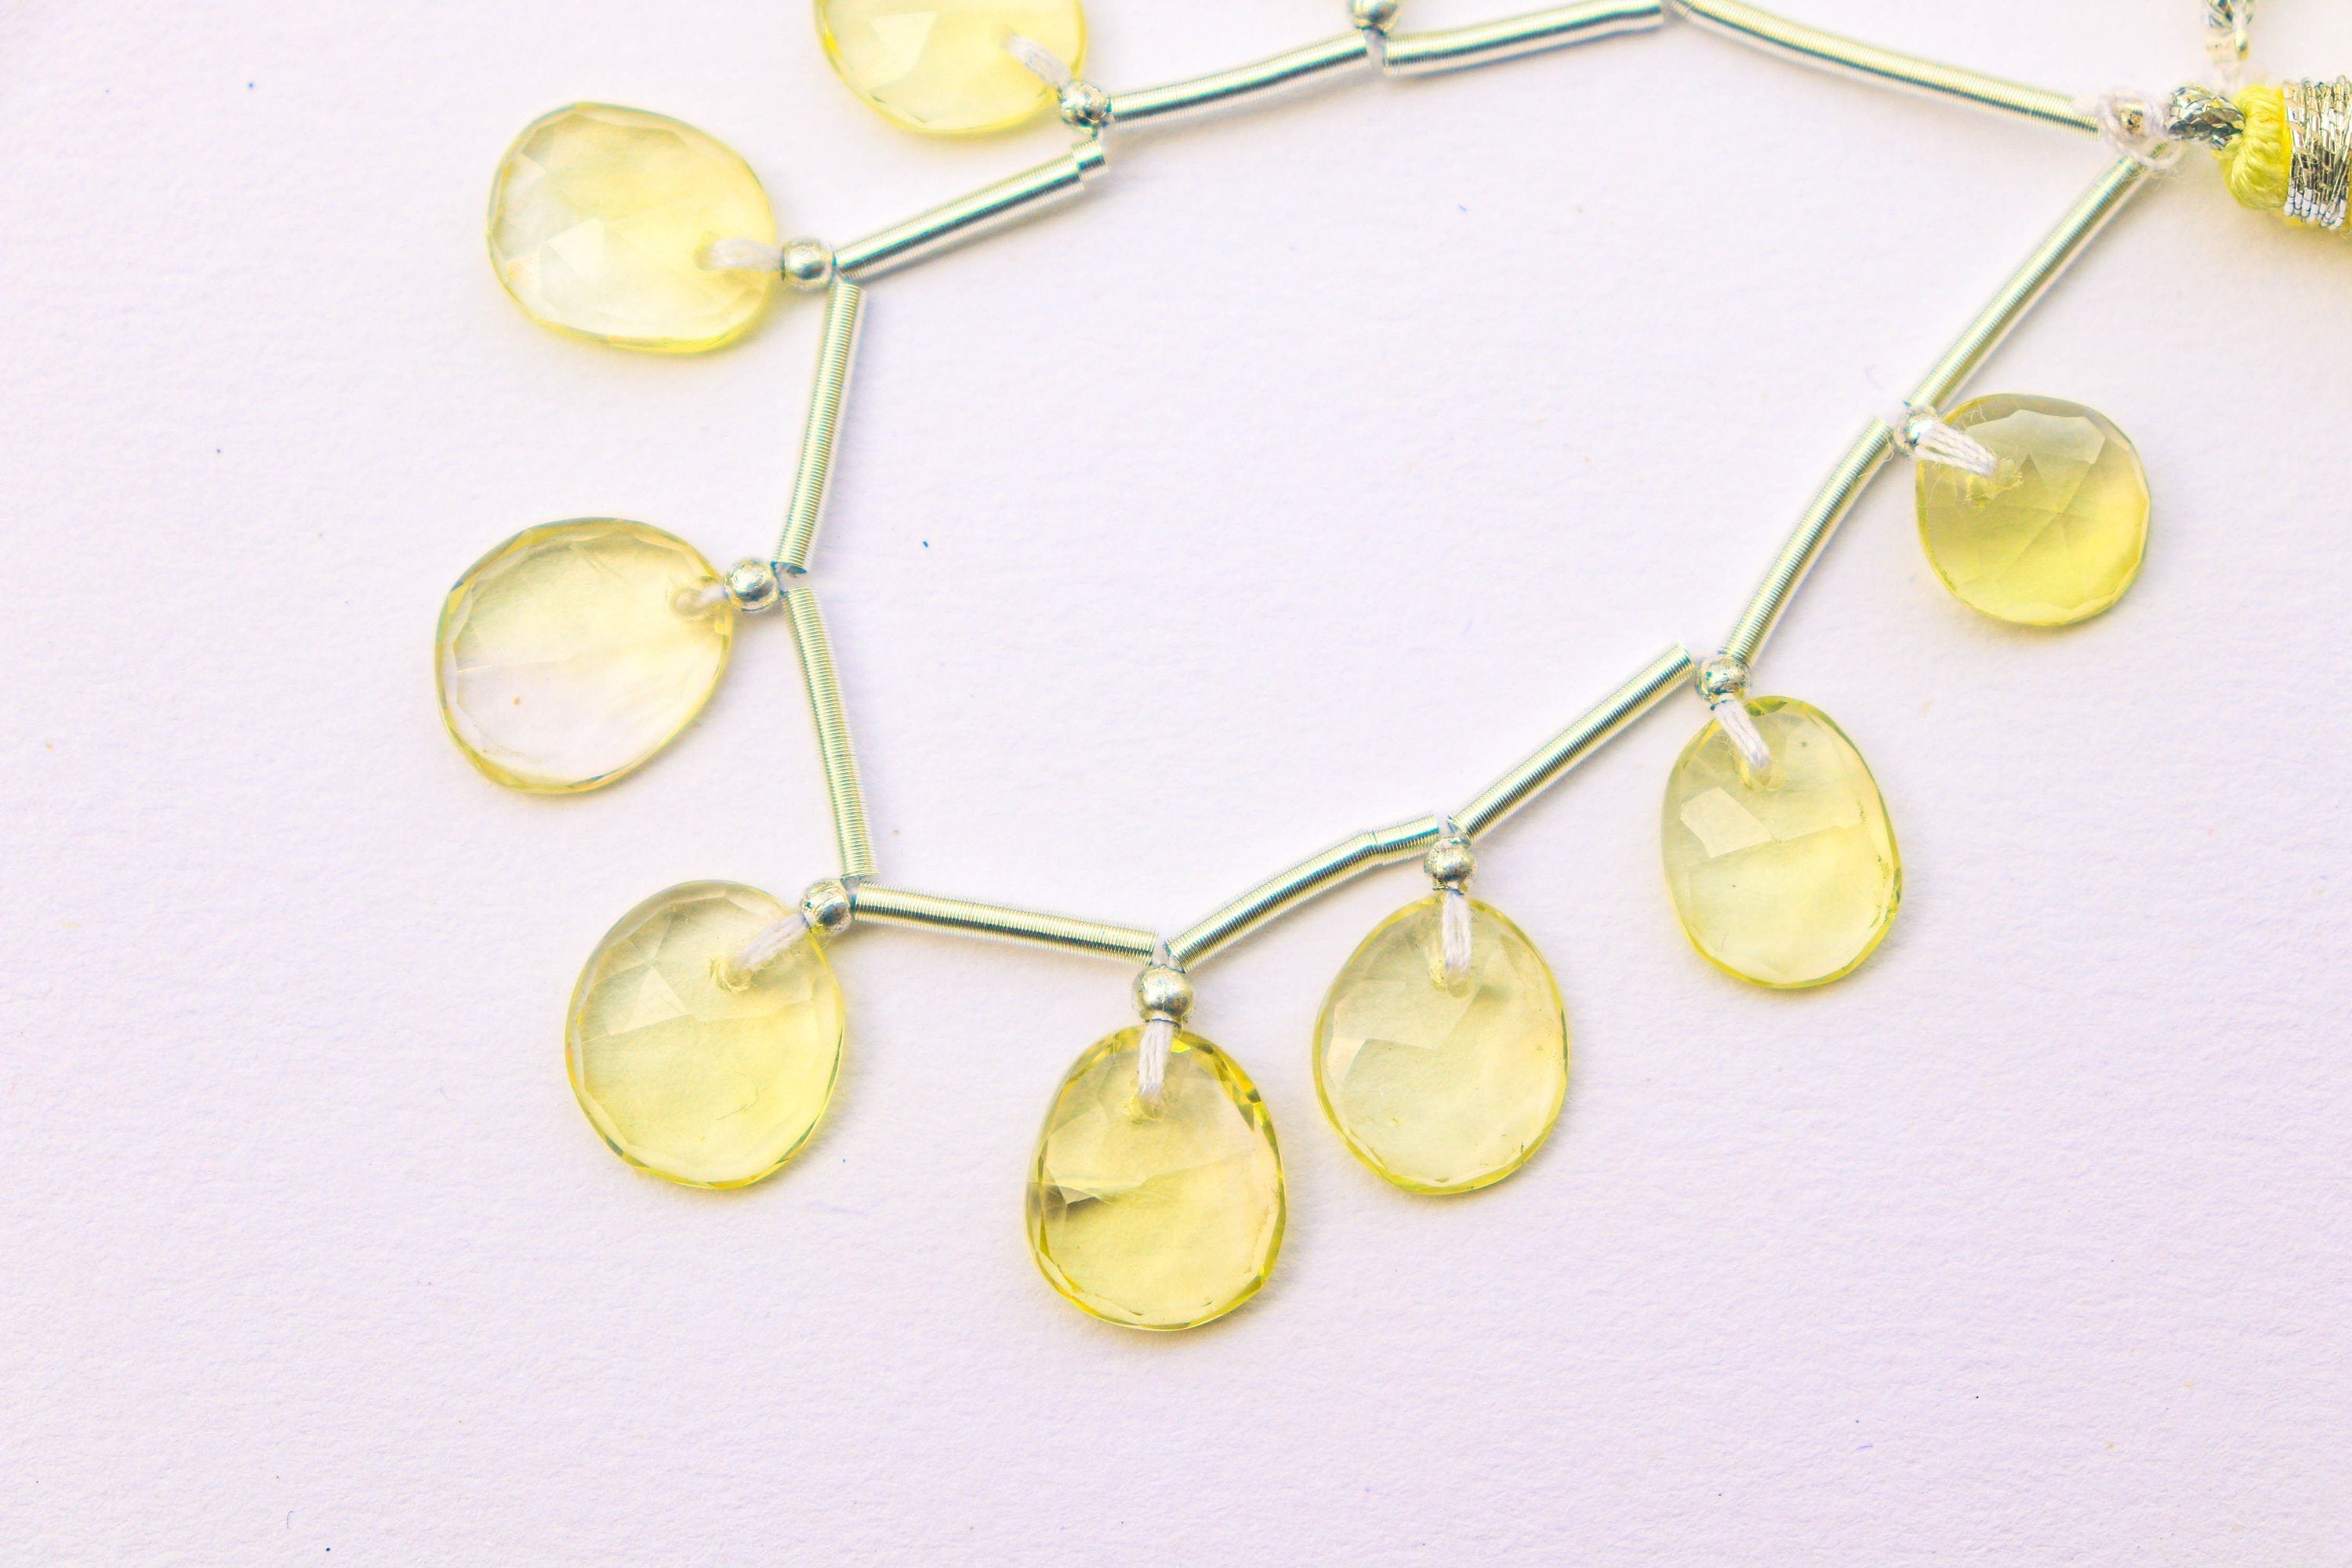 Lemon Quartz Faceted Uneven Shape Rose cut Briolette Beads | 10 Pieces | Natural Lemon quartz Gemstone Beads | Beadsforyourjewelry BFYJ1196-2 Beadsforyourjewelry